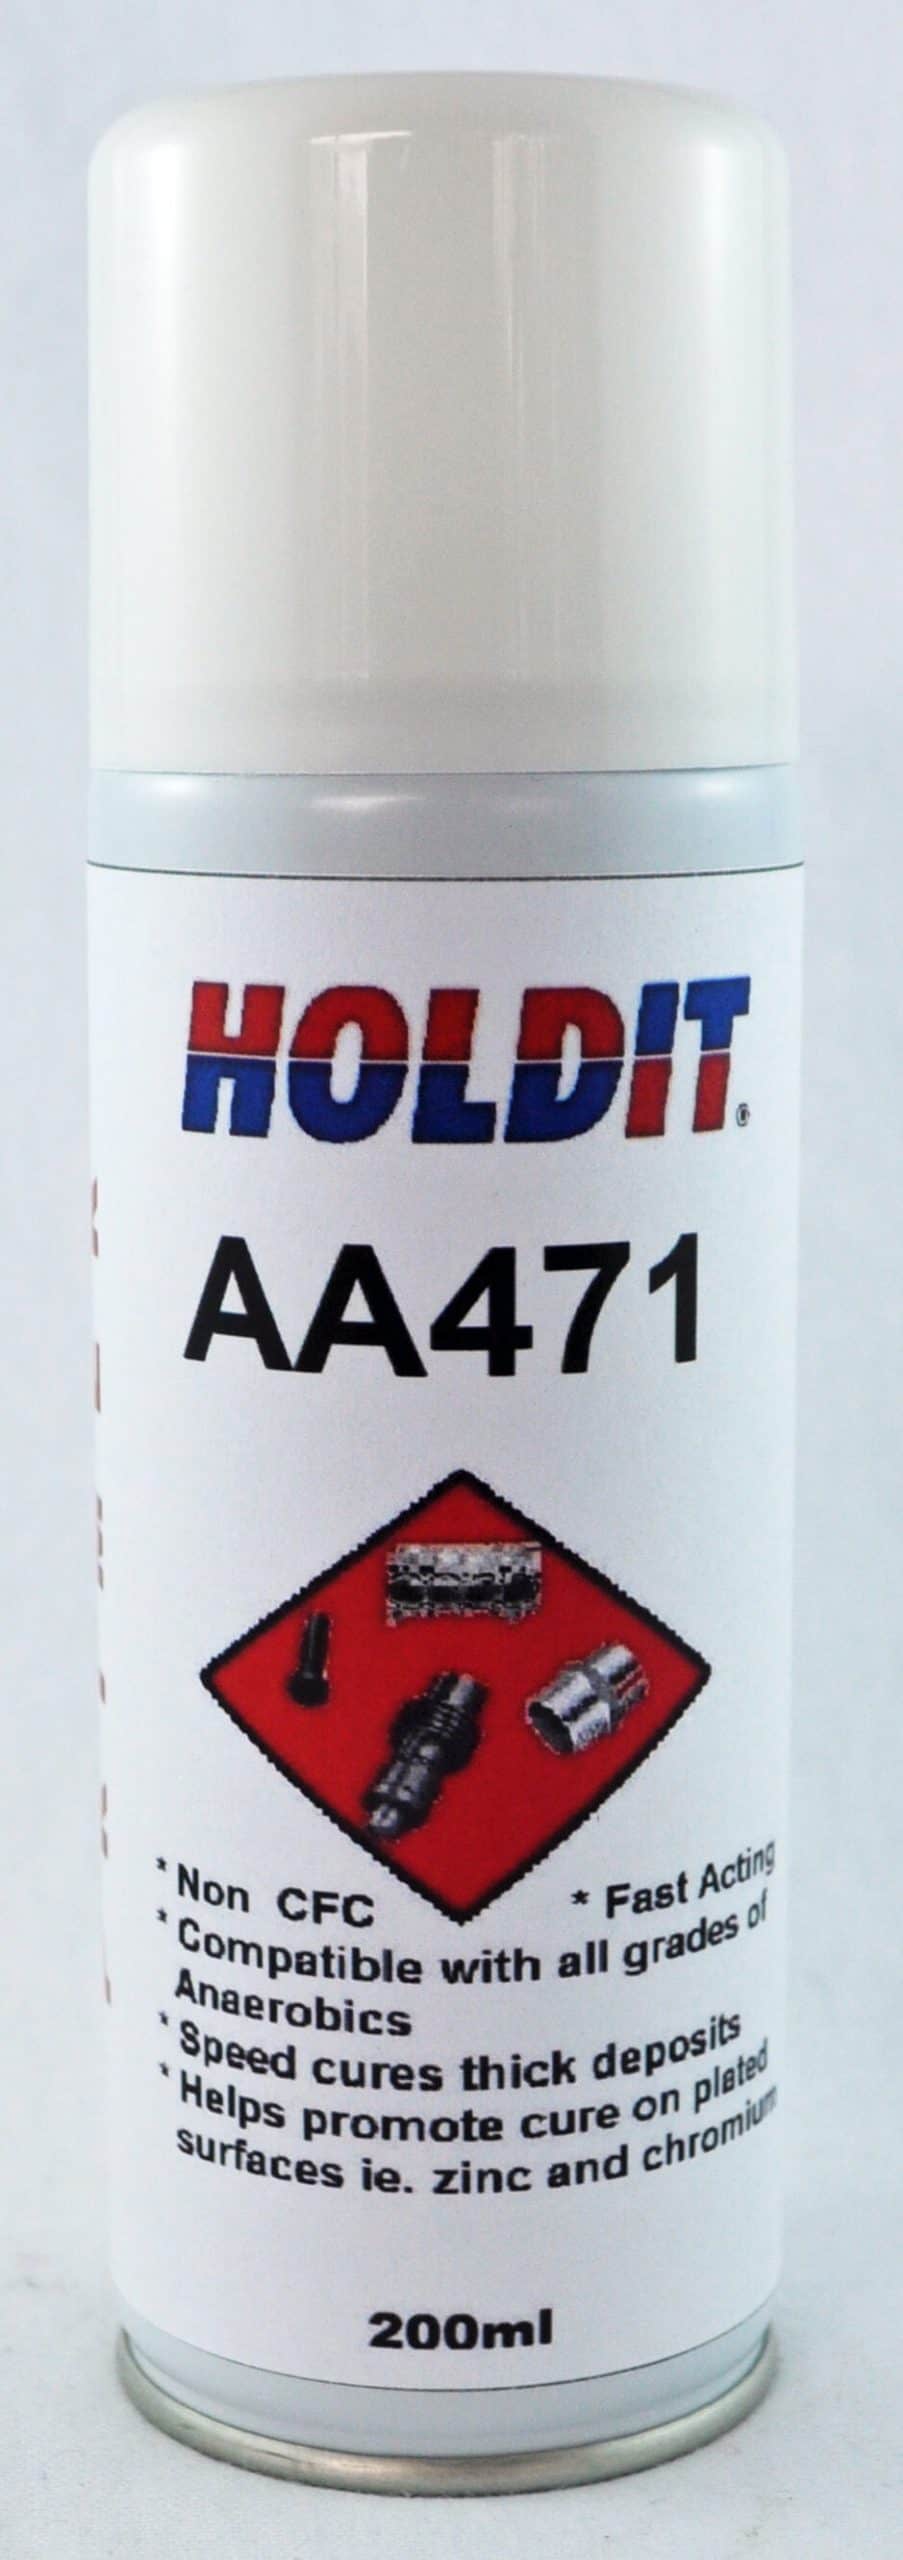 HOLDIT_AA471